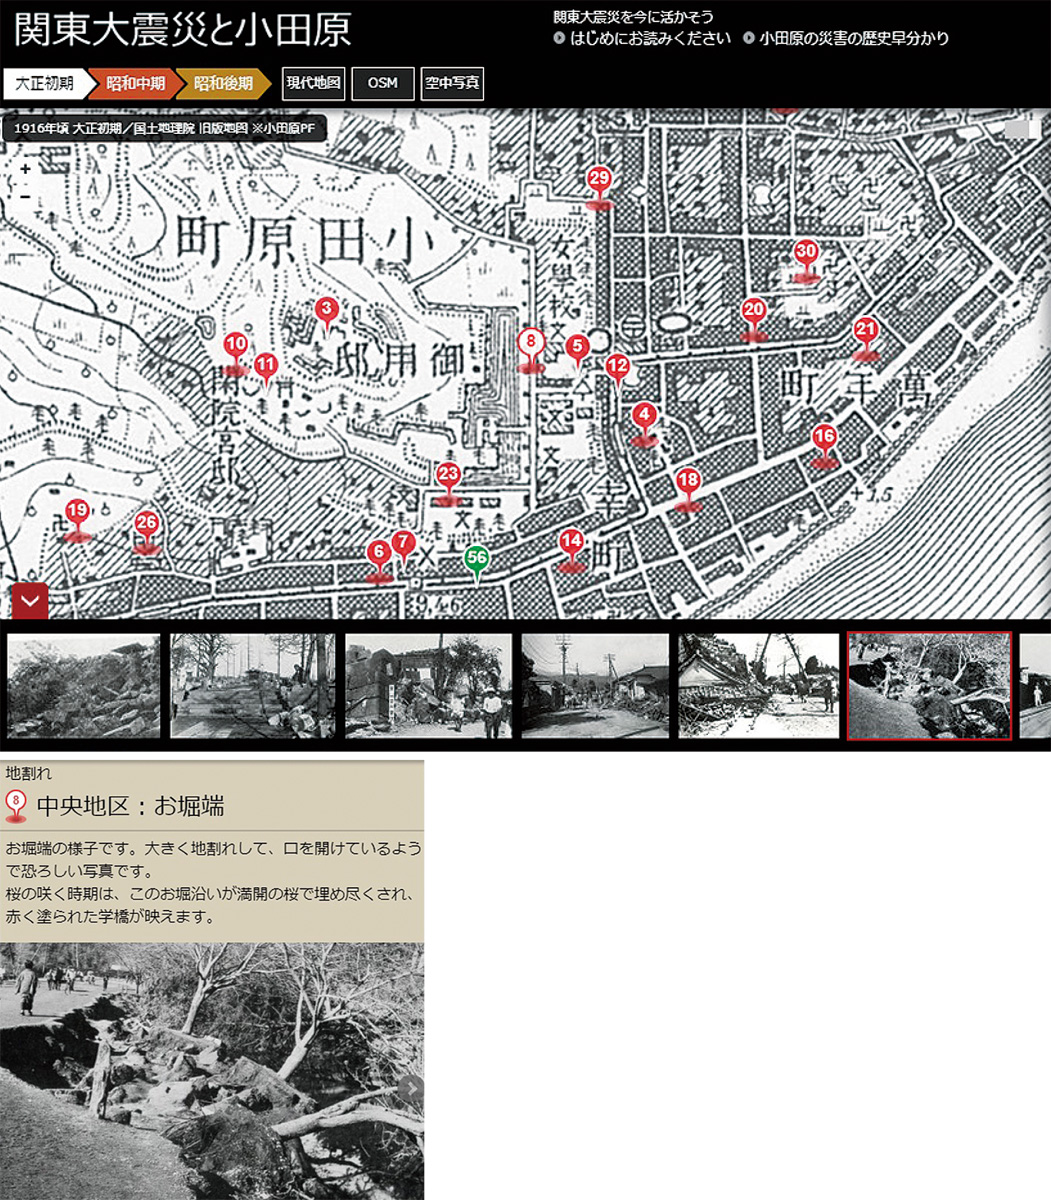 地図、写真で見る関東大震災